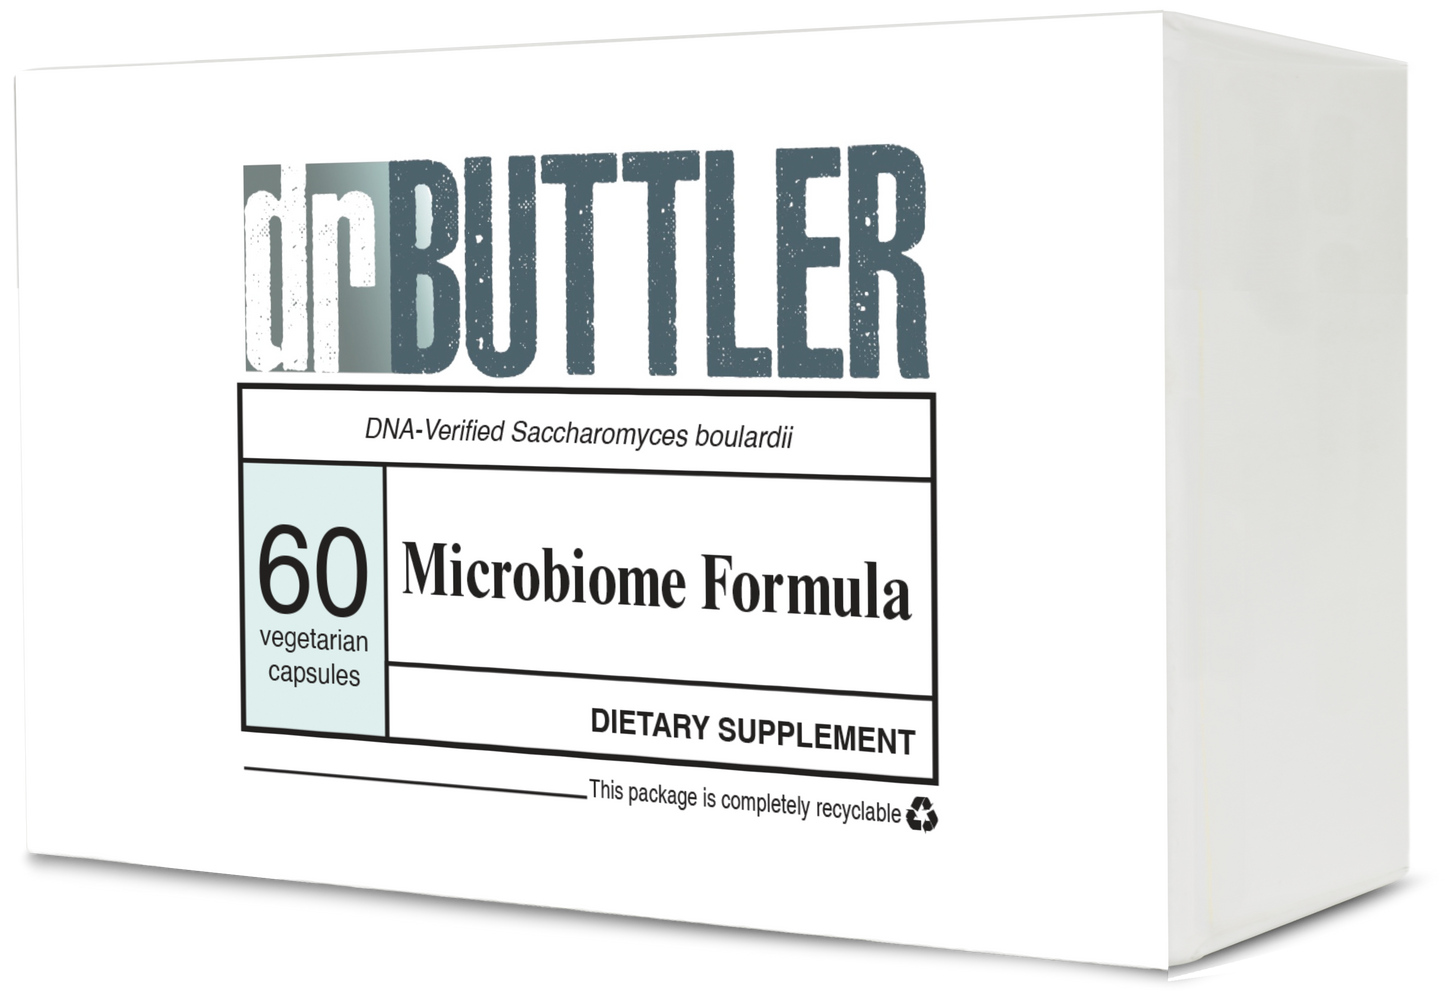 Microbiome Formula